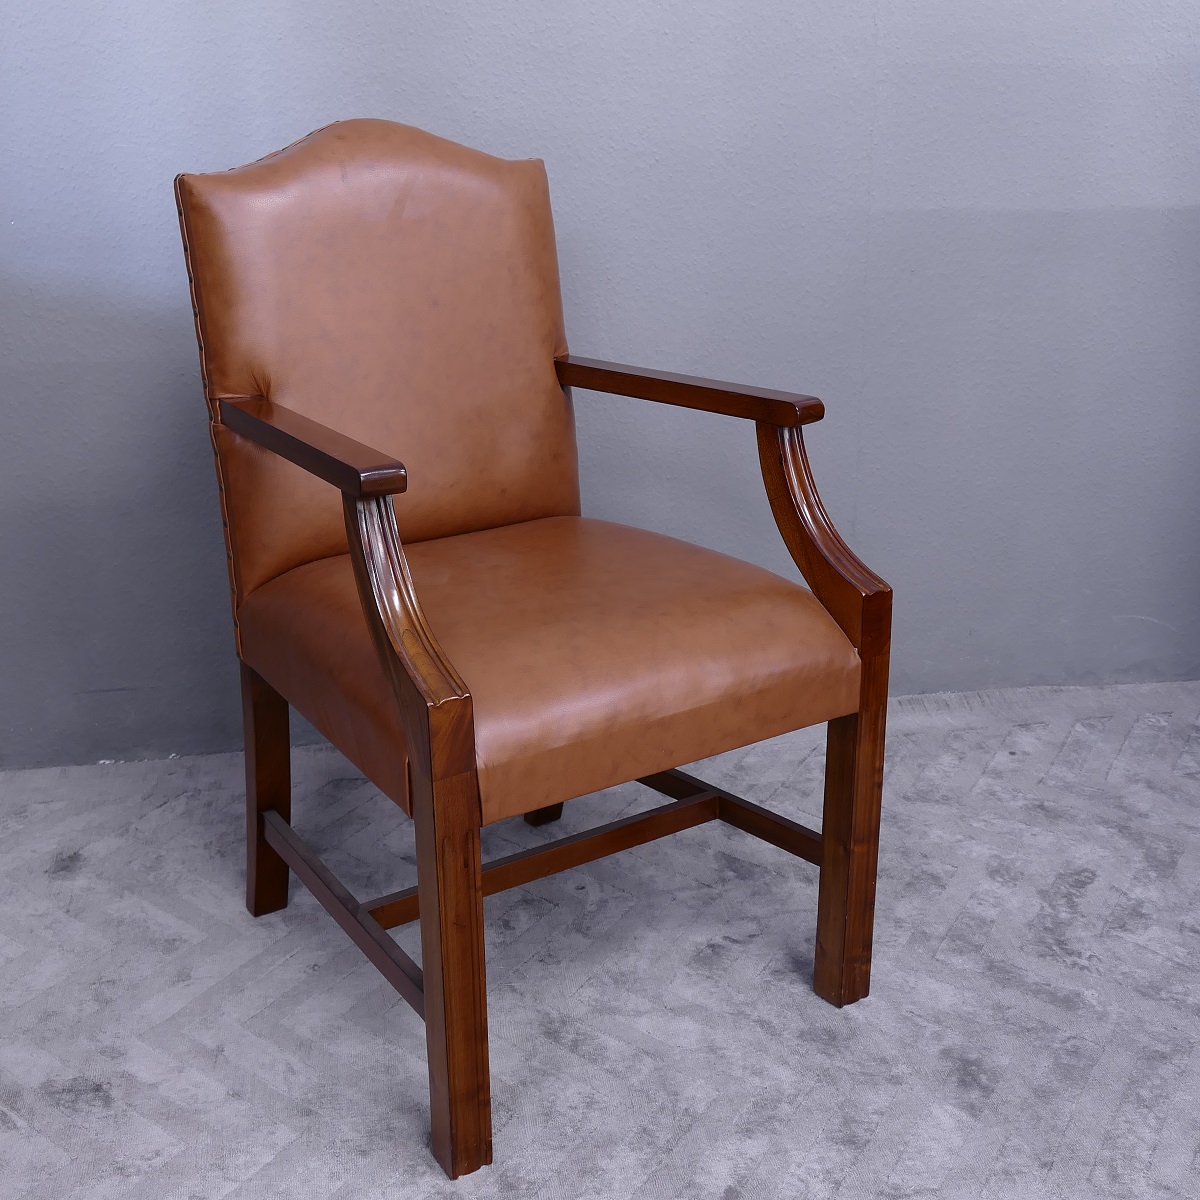 Wunderschöner Sessel mit Armlehne, Mahagoni, Leder brown